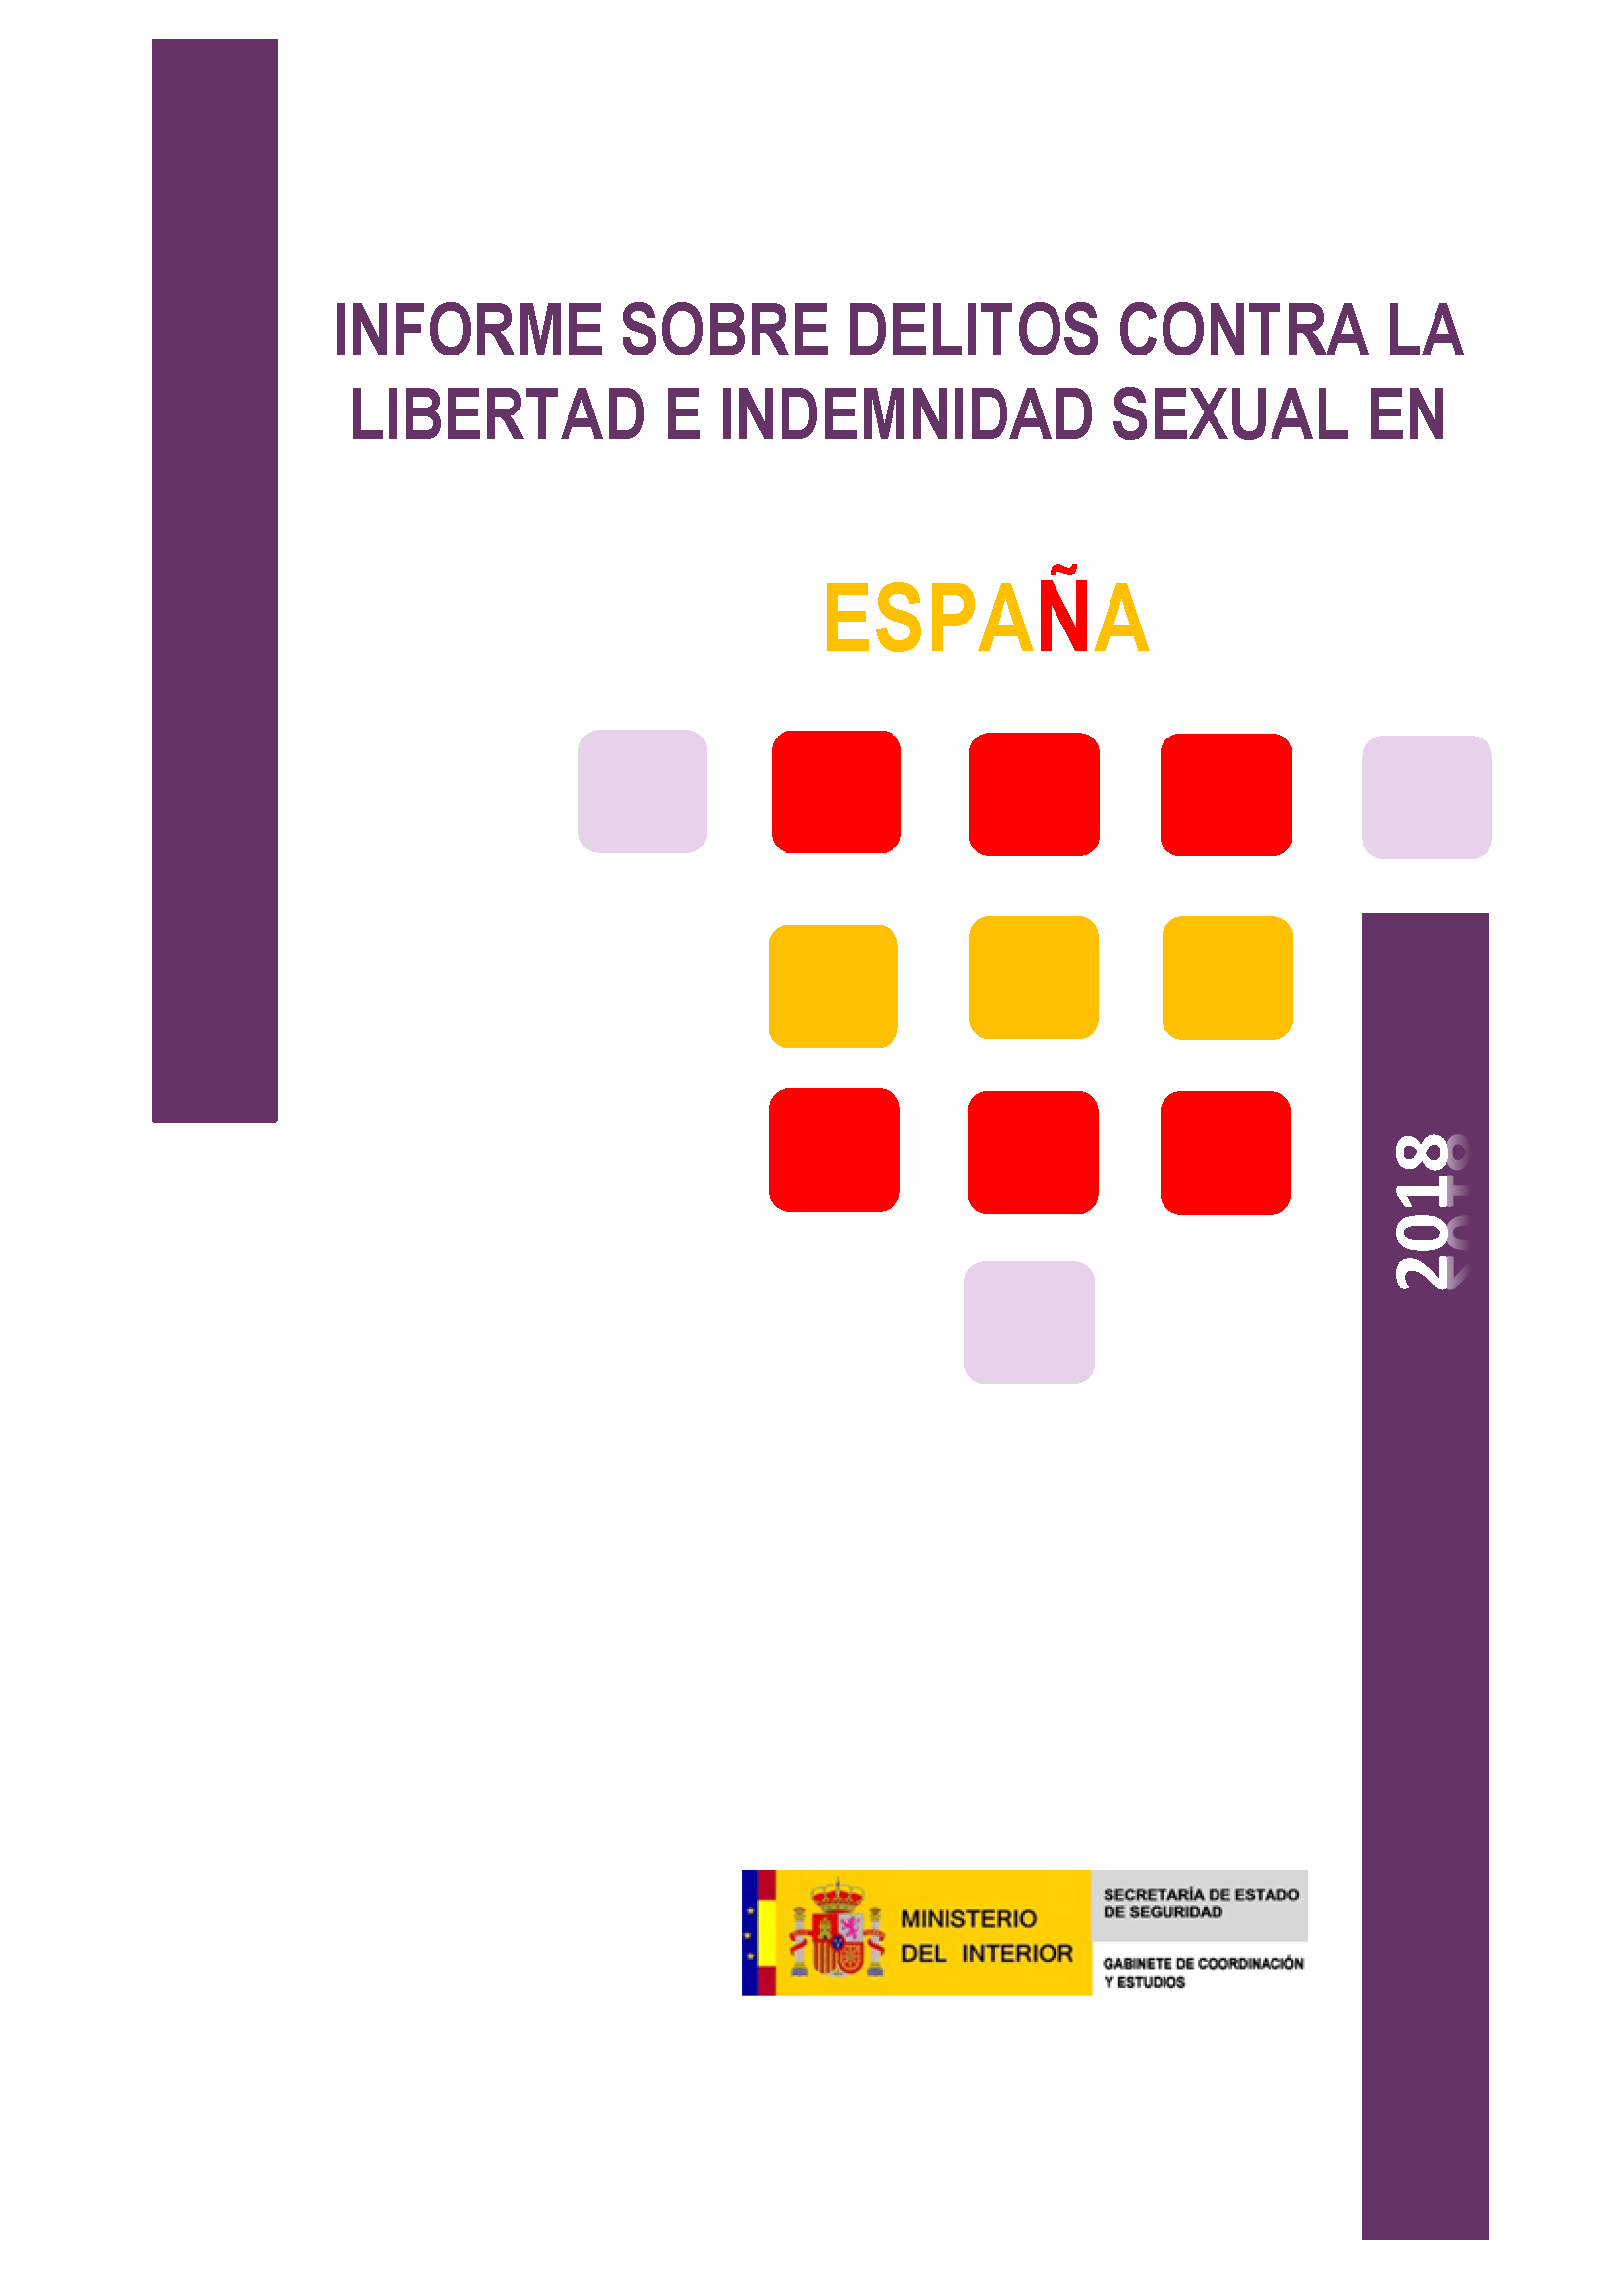 Informe Delitos Contra la Libertad e Indemnidad Sexual 2018